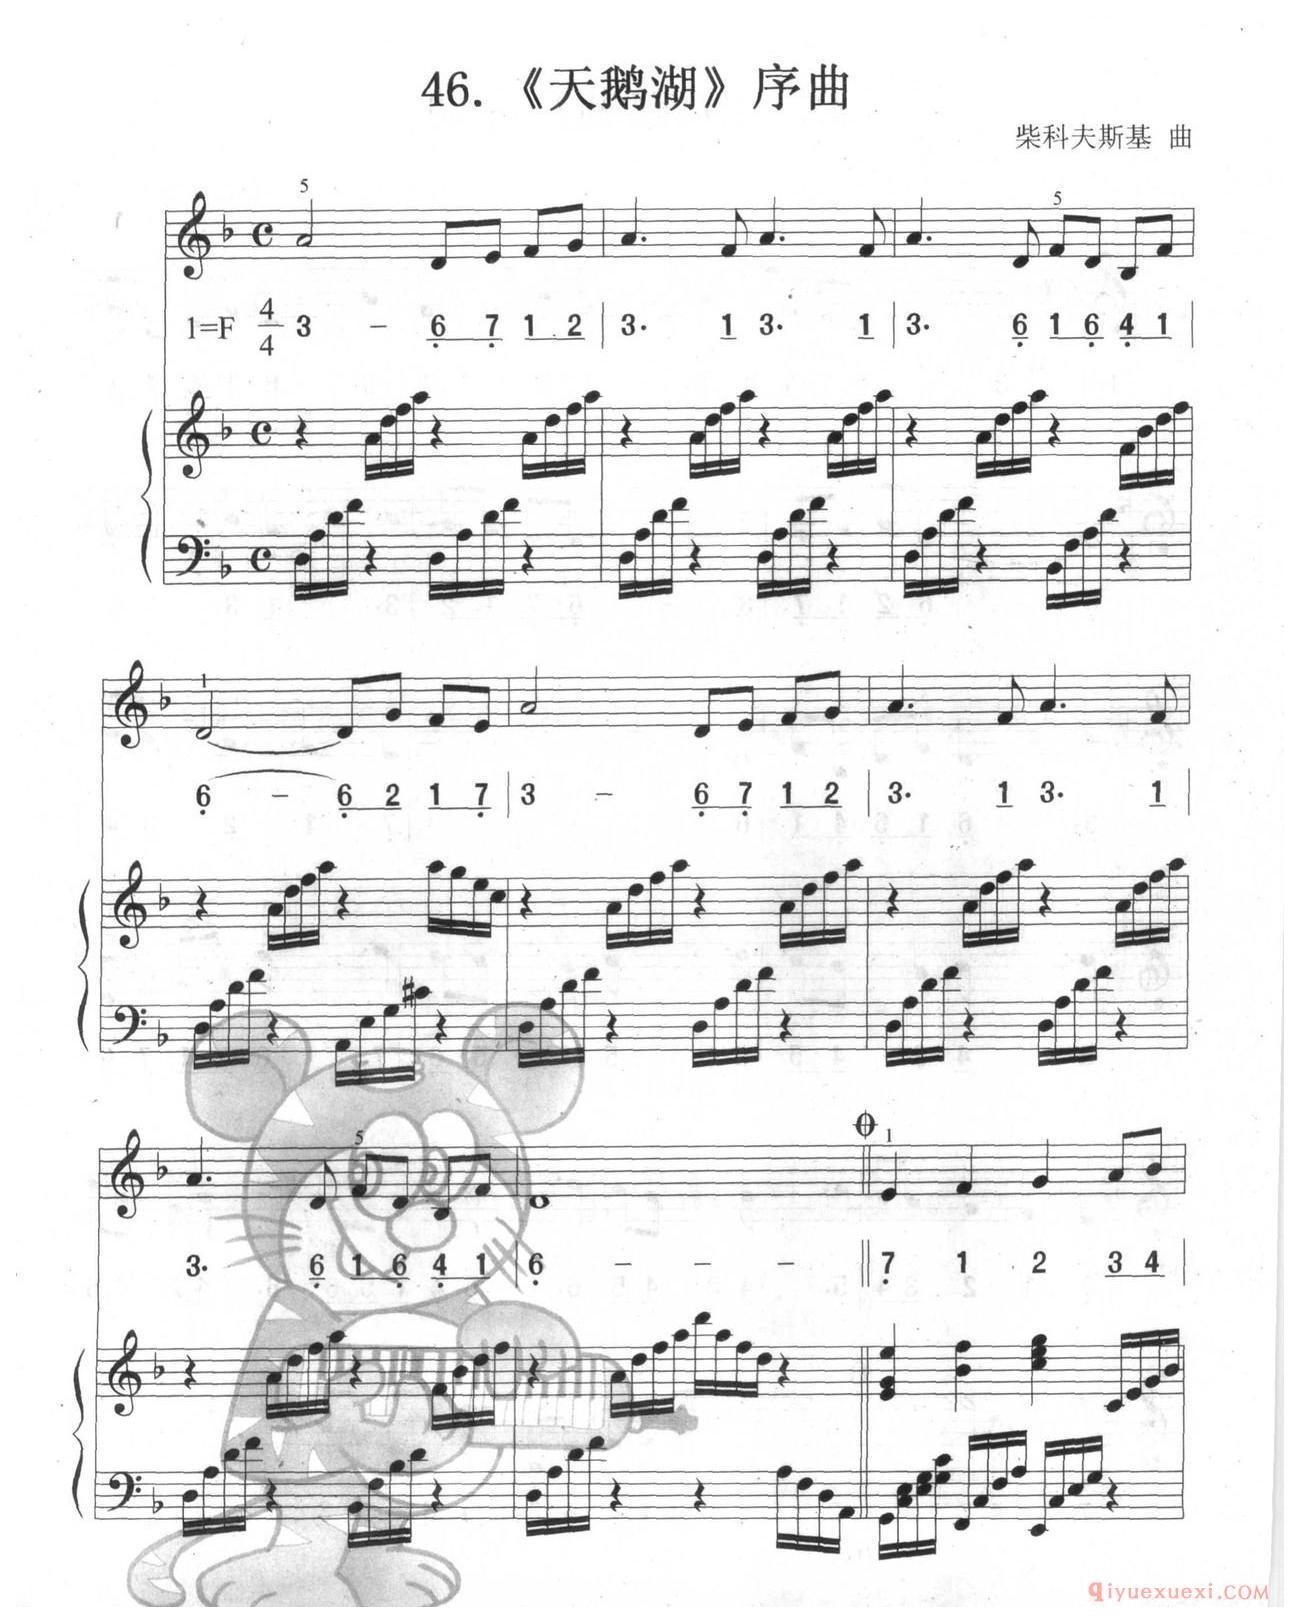 口风琴多声部乐曲《天鹅湖序曲(总谱)》加入打击乐的练习